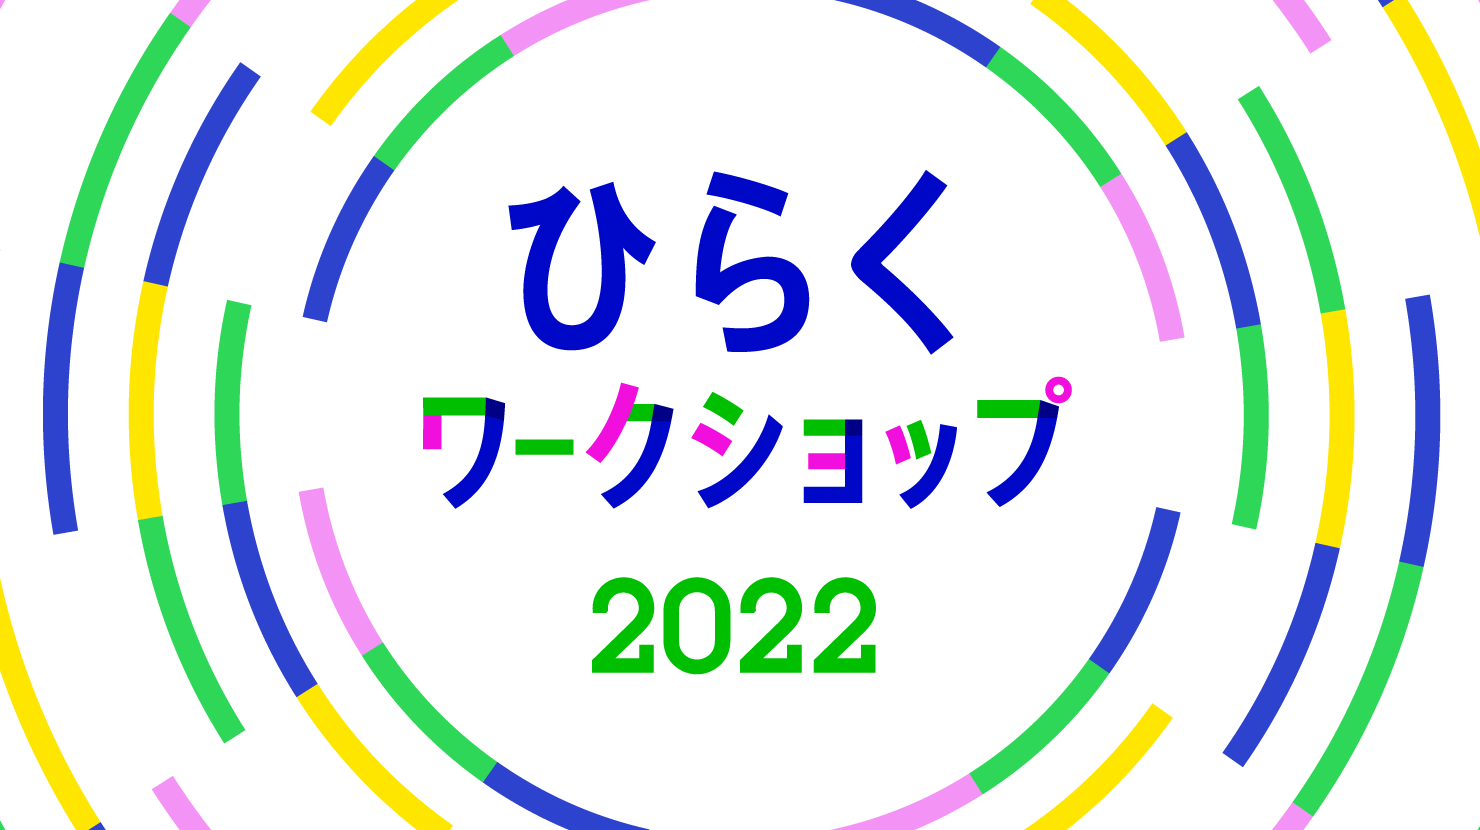 学生向けイベント「CONCENT ひらくワークショップ 2022」を開催。第1回の募集を開始